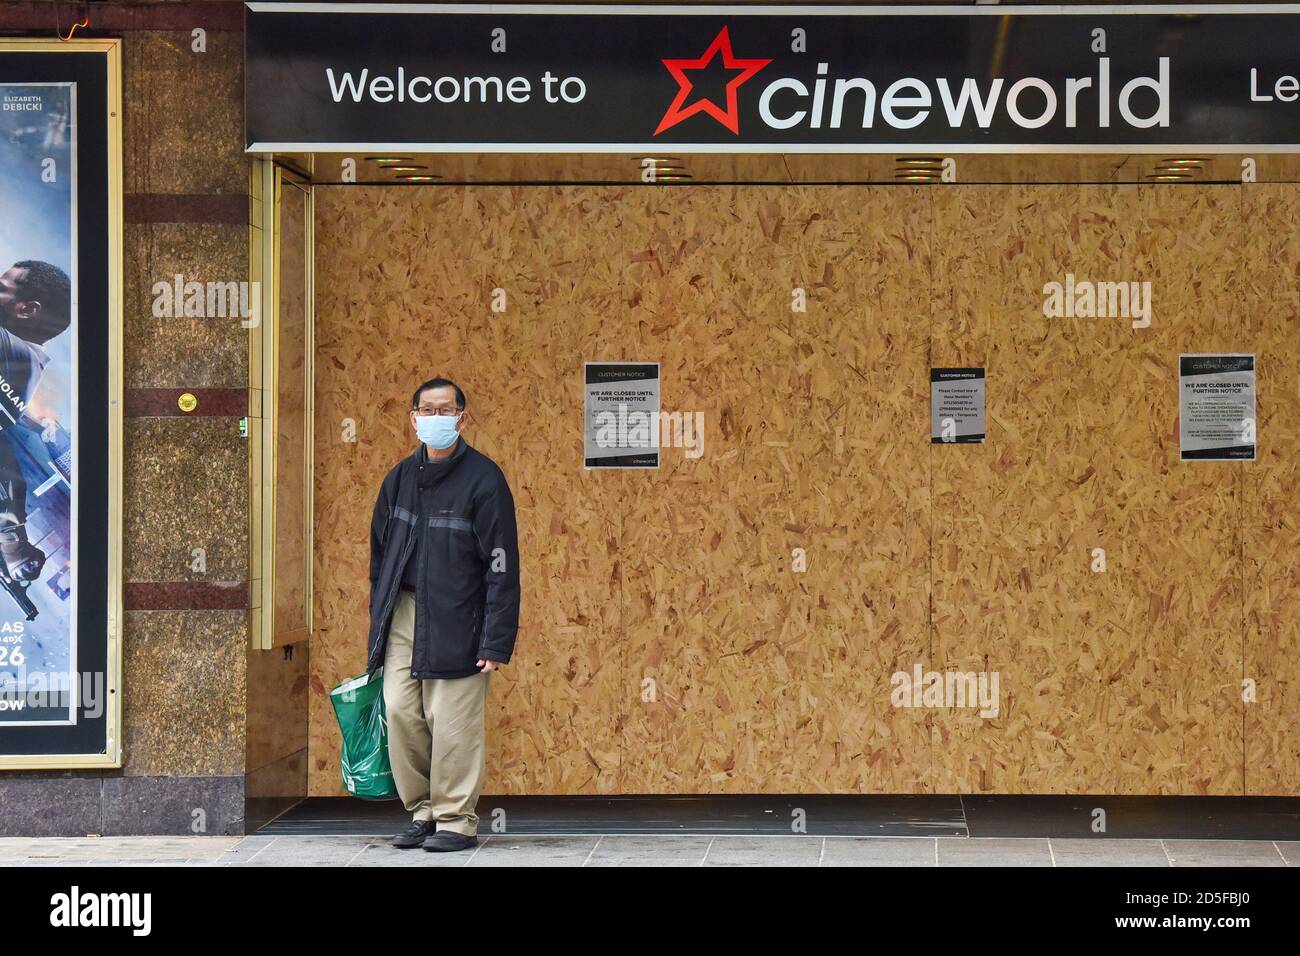 Ein Mann mit Gesichtsmaske steht vor dem Cineworld Kino in London.die britische Kinokette Cineworld kündigte an, dass sie vorübergehend Kinos in Großbritannien und den Vereinigten Staaten schließt, da die Coronavirus-Pandemie große neue Filme verzögert. Stockfoto